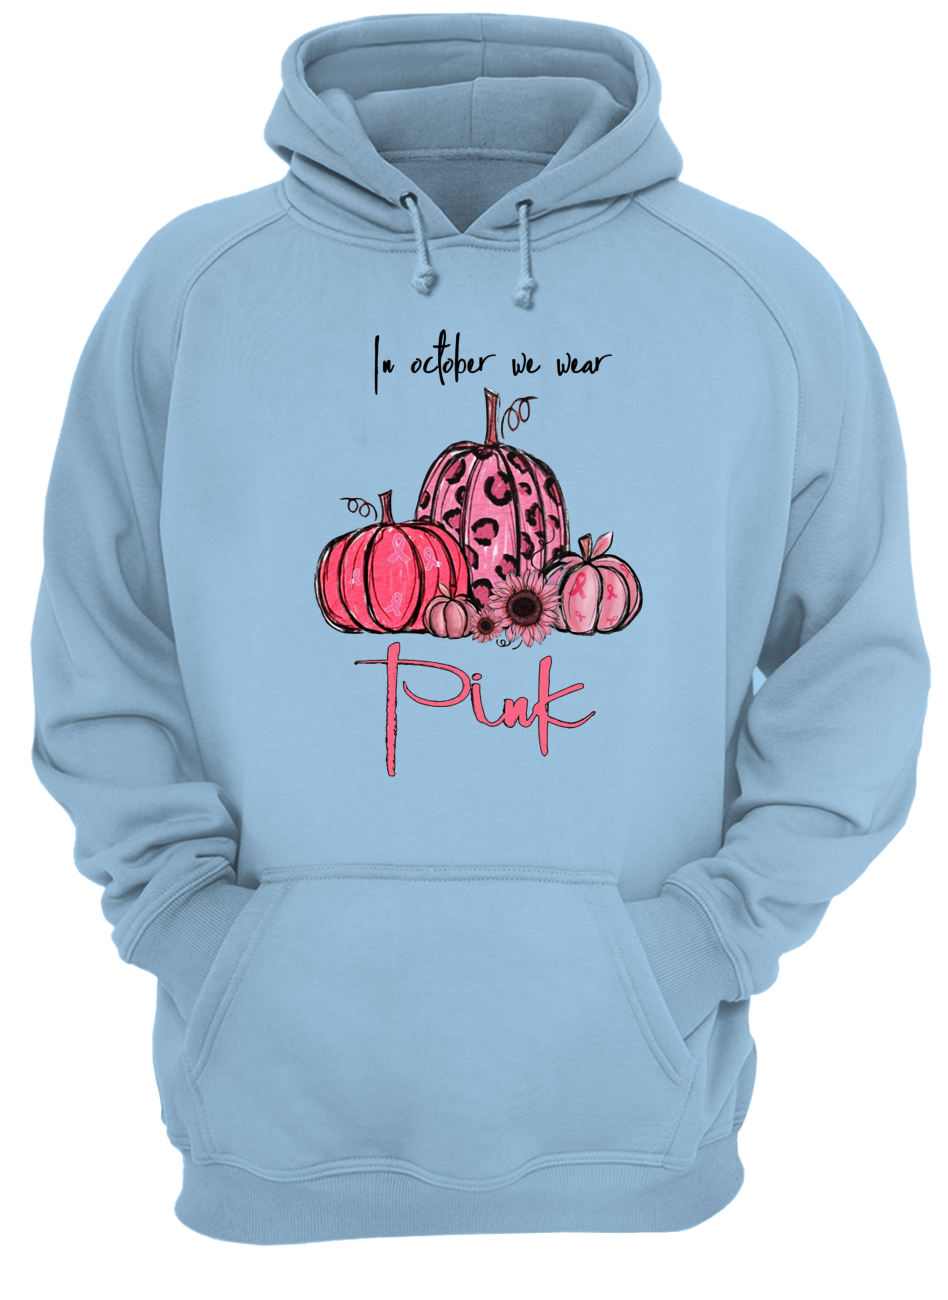 Pumpkin breast cancer in october we wear pink hoodie